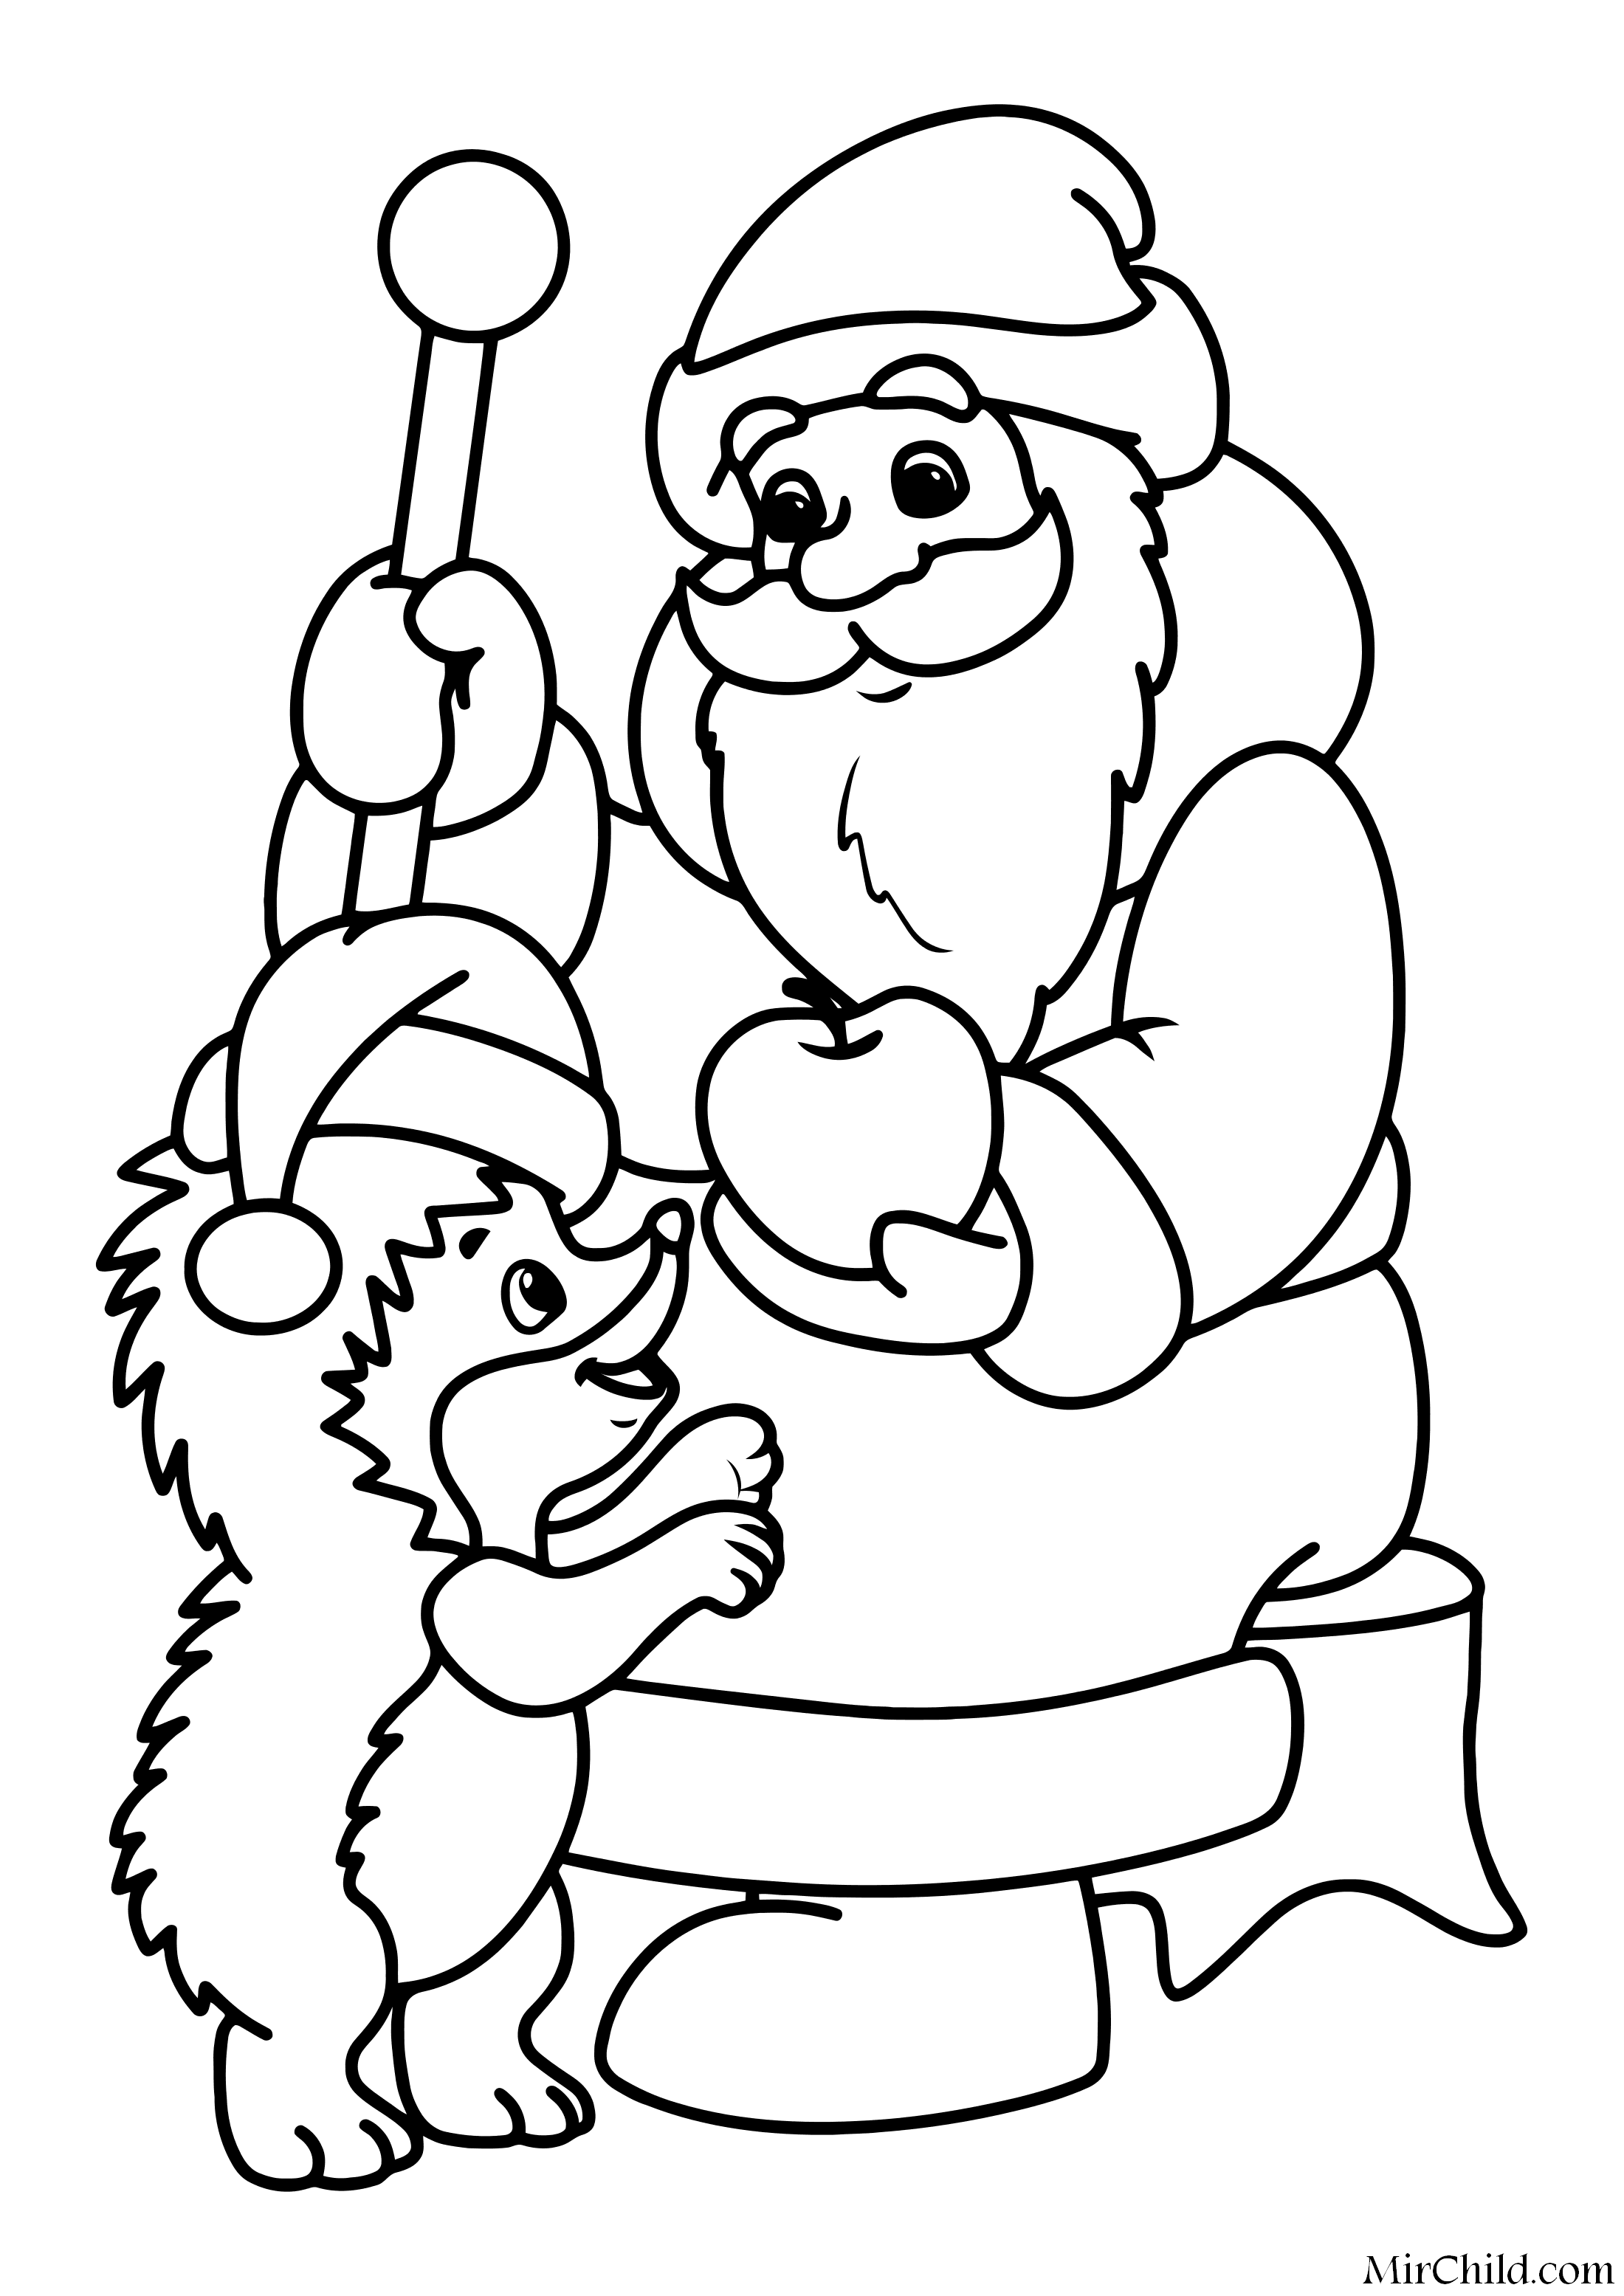 Распечатать раскраски для малышей с Дедом Морозом